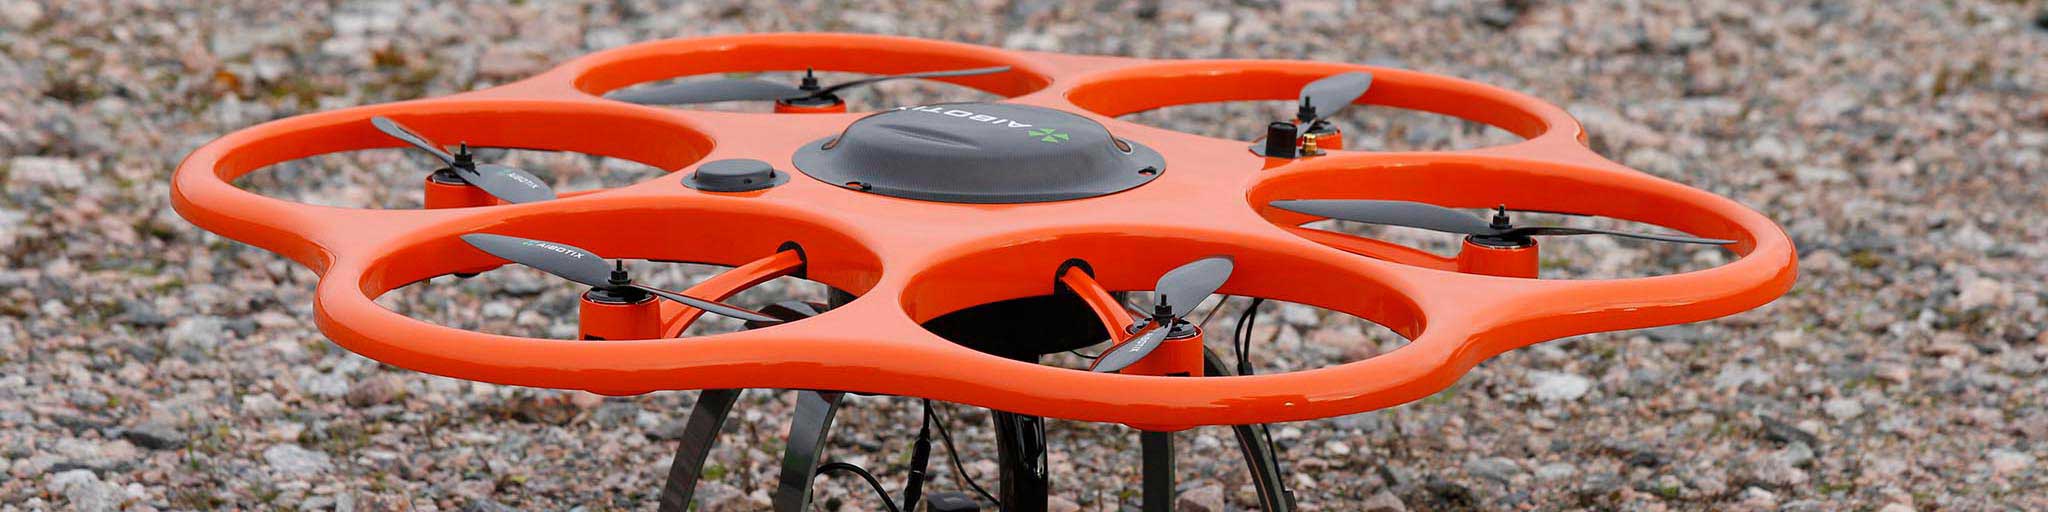 hawkeye as kartlegging med drone